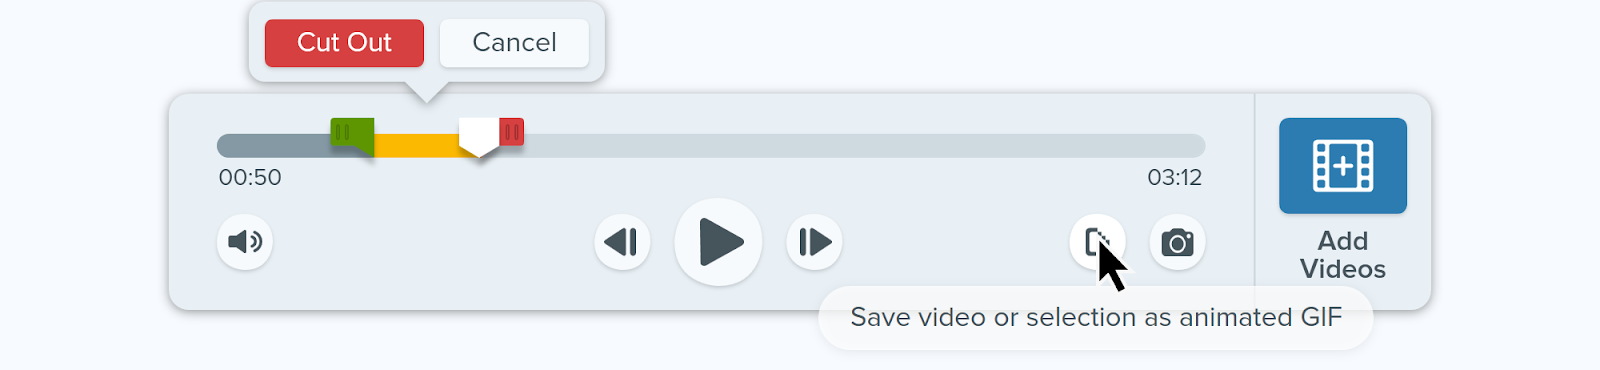 Изображение простого в использовании пользовательского интерфейса Snagit, в котором курсор наведен на кнопку «Сохранить видео или выделенное в виде анимированного GIF-файла».